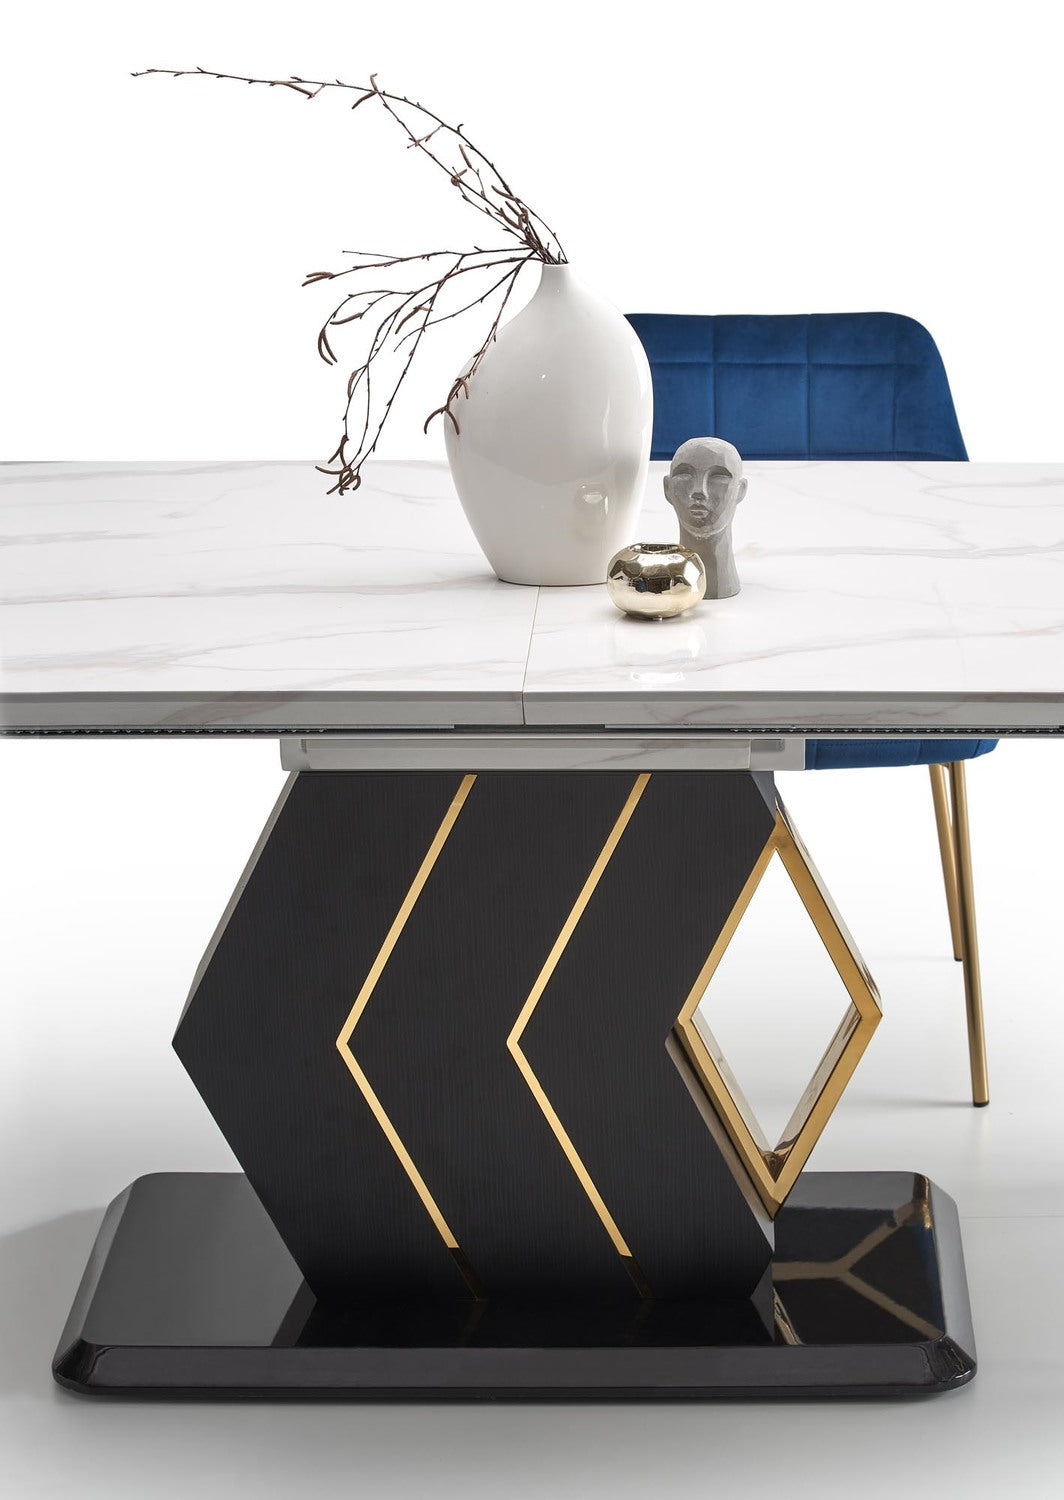 VN palīdzama galda virsma: baltā marmora, melna/zelta kāja